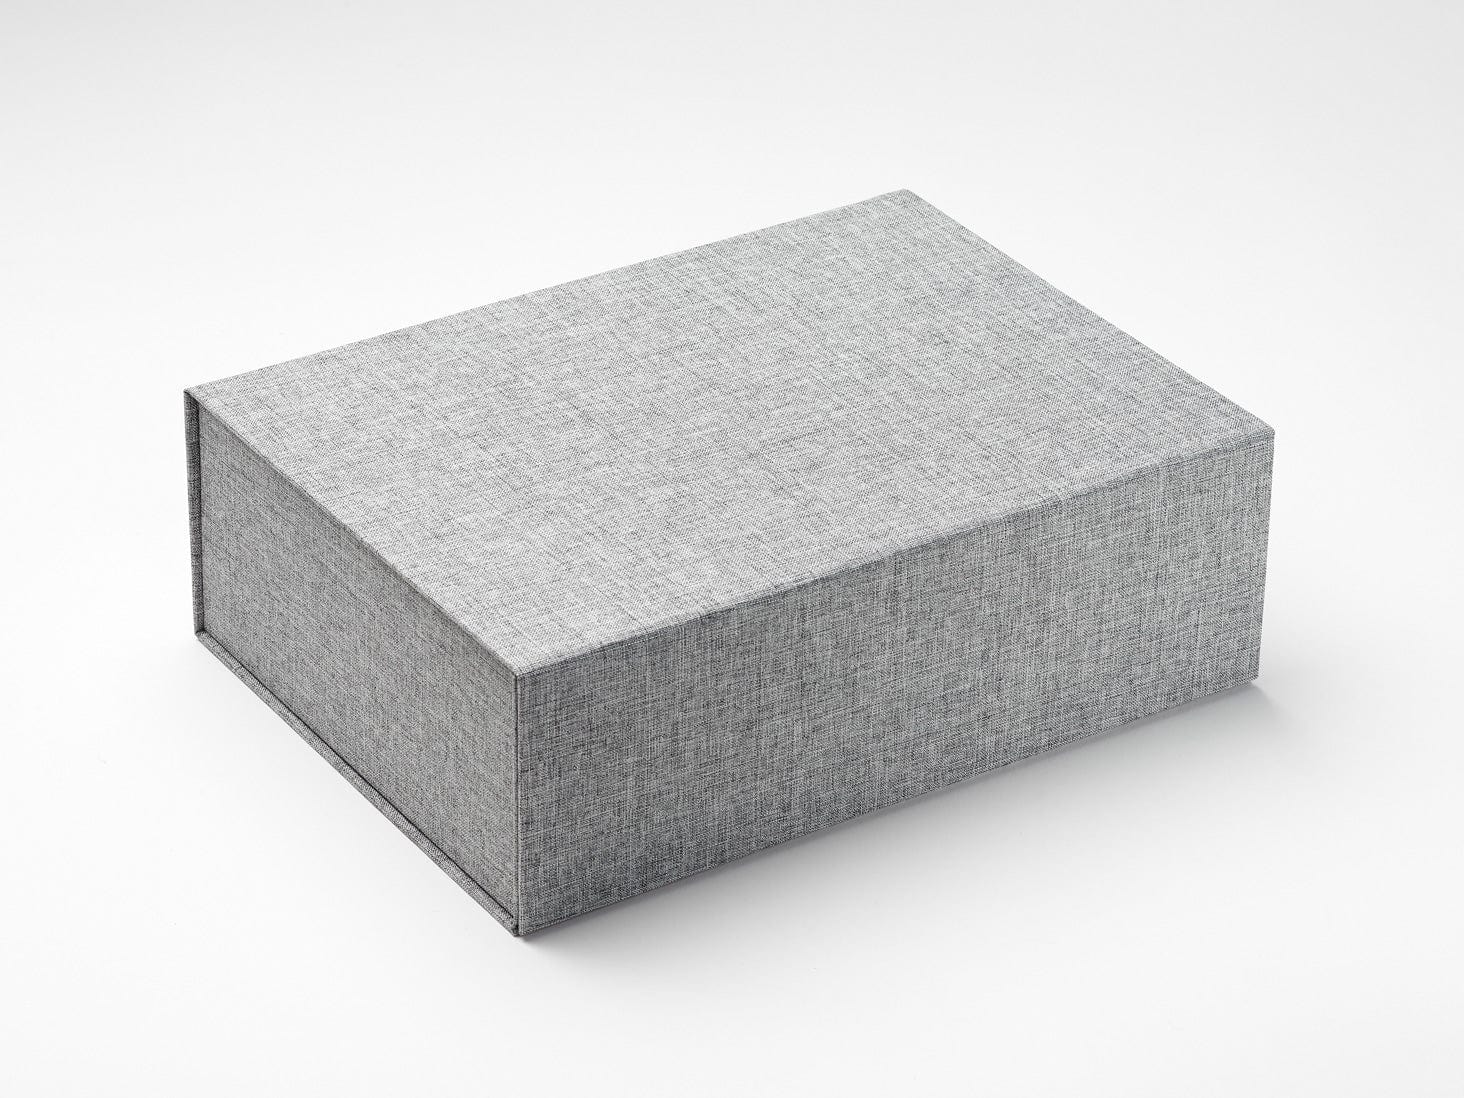 Sample Grey Linen A4 Deep No Magnets Gift Box Assembled